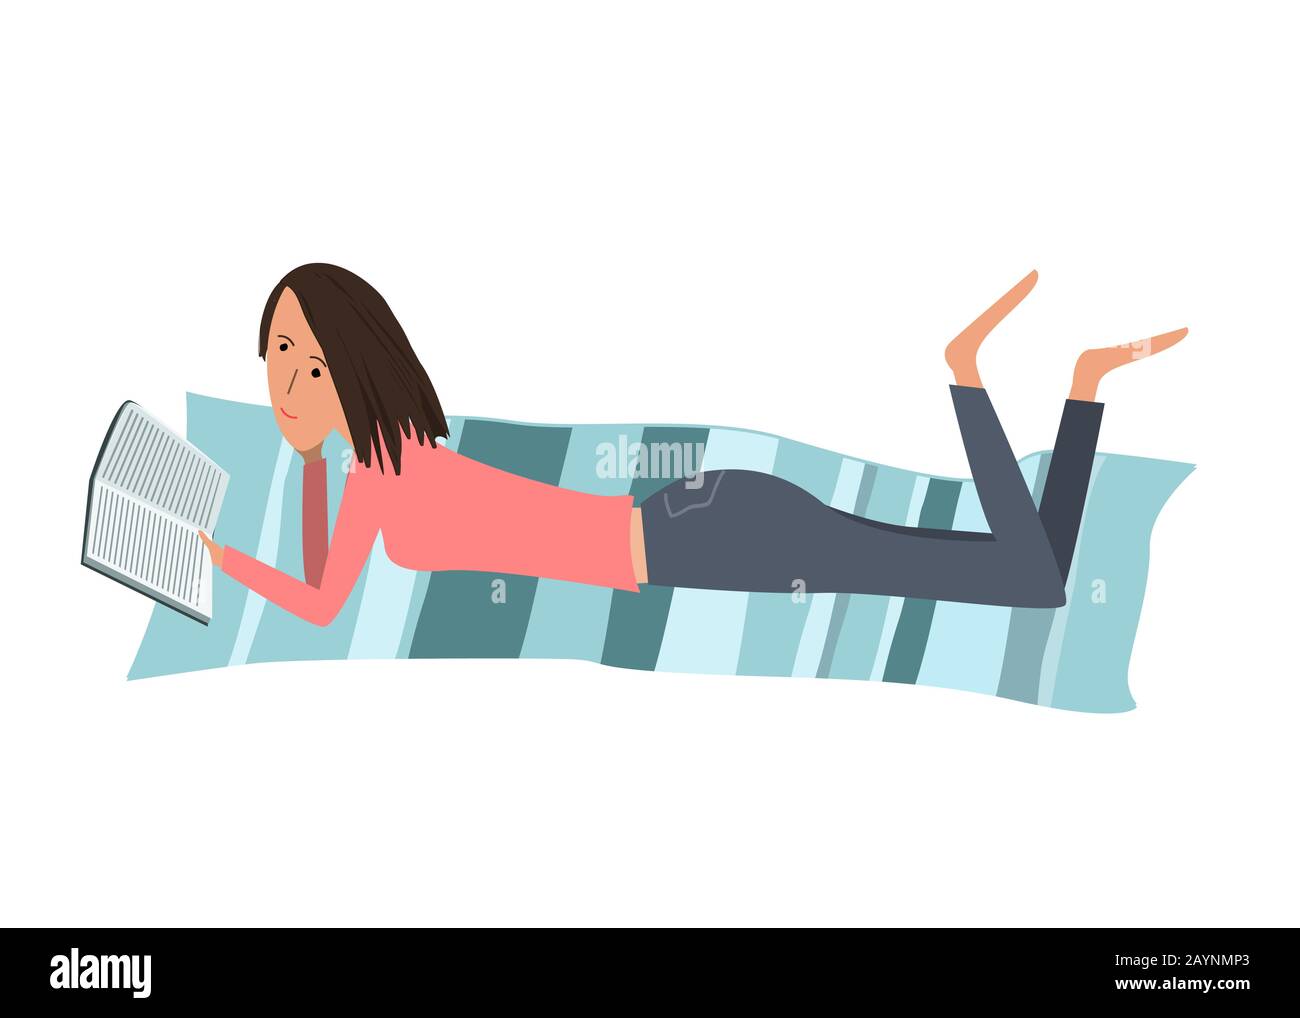 Vektor-Cartoon-Illustration mit einer hübschen Frau, die ein Buch liest, während sie auf dem Bauch liegt. Skizzenstil Stock Vektor